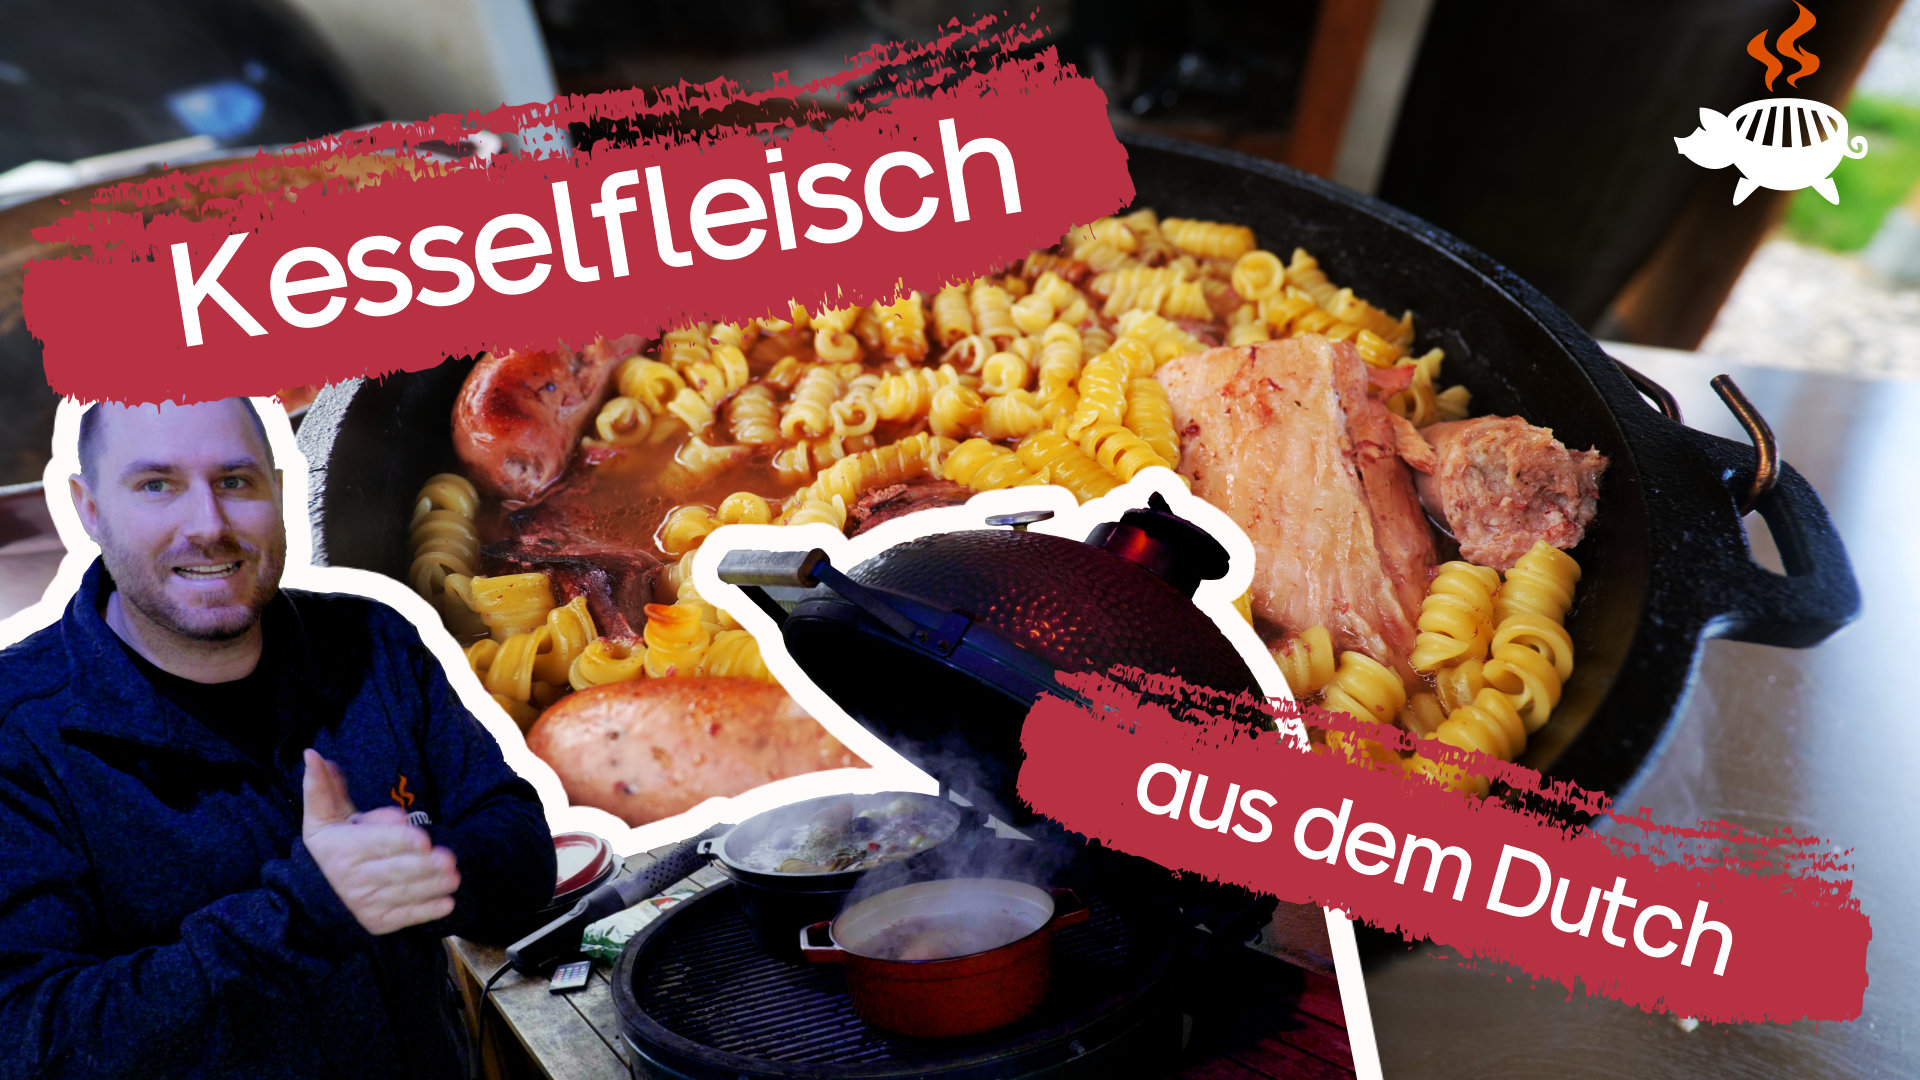 Kesselfleisch mit Sauerkraut aus dem Grillschweine Dutch Oven